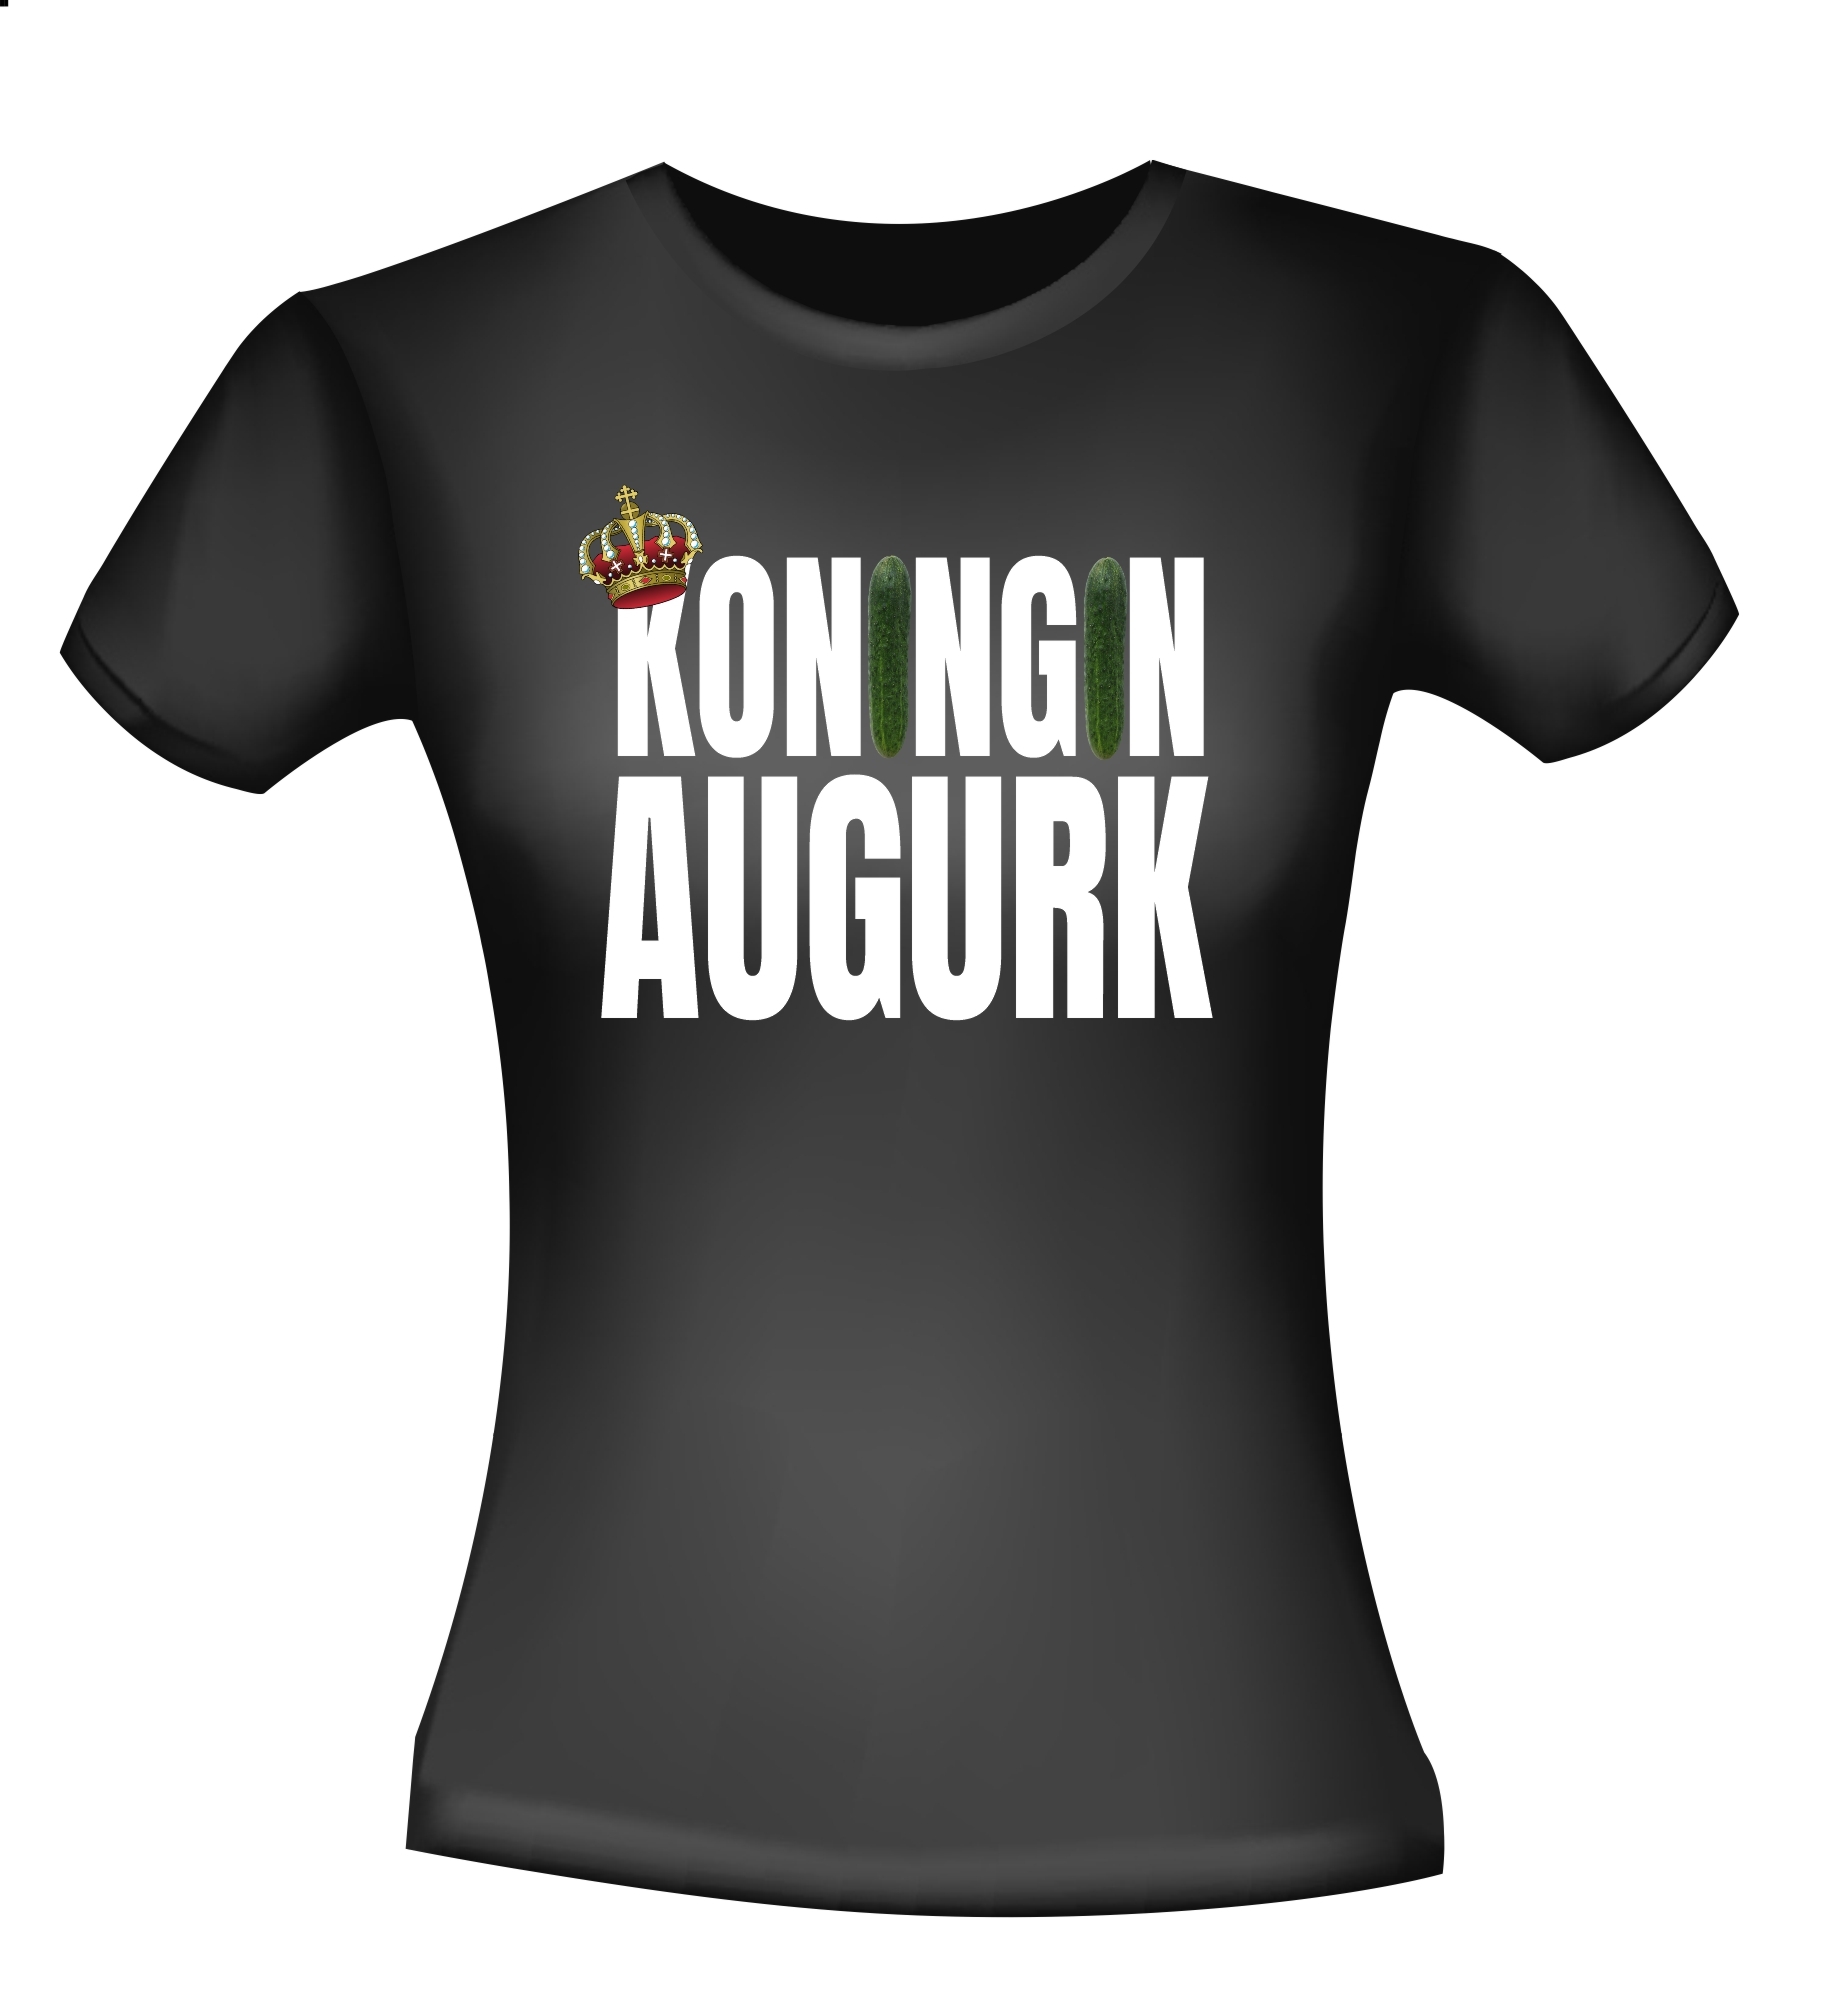 Shirtje voor een echte koningin Augurk